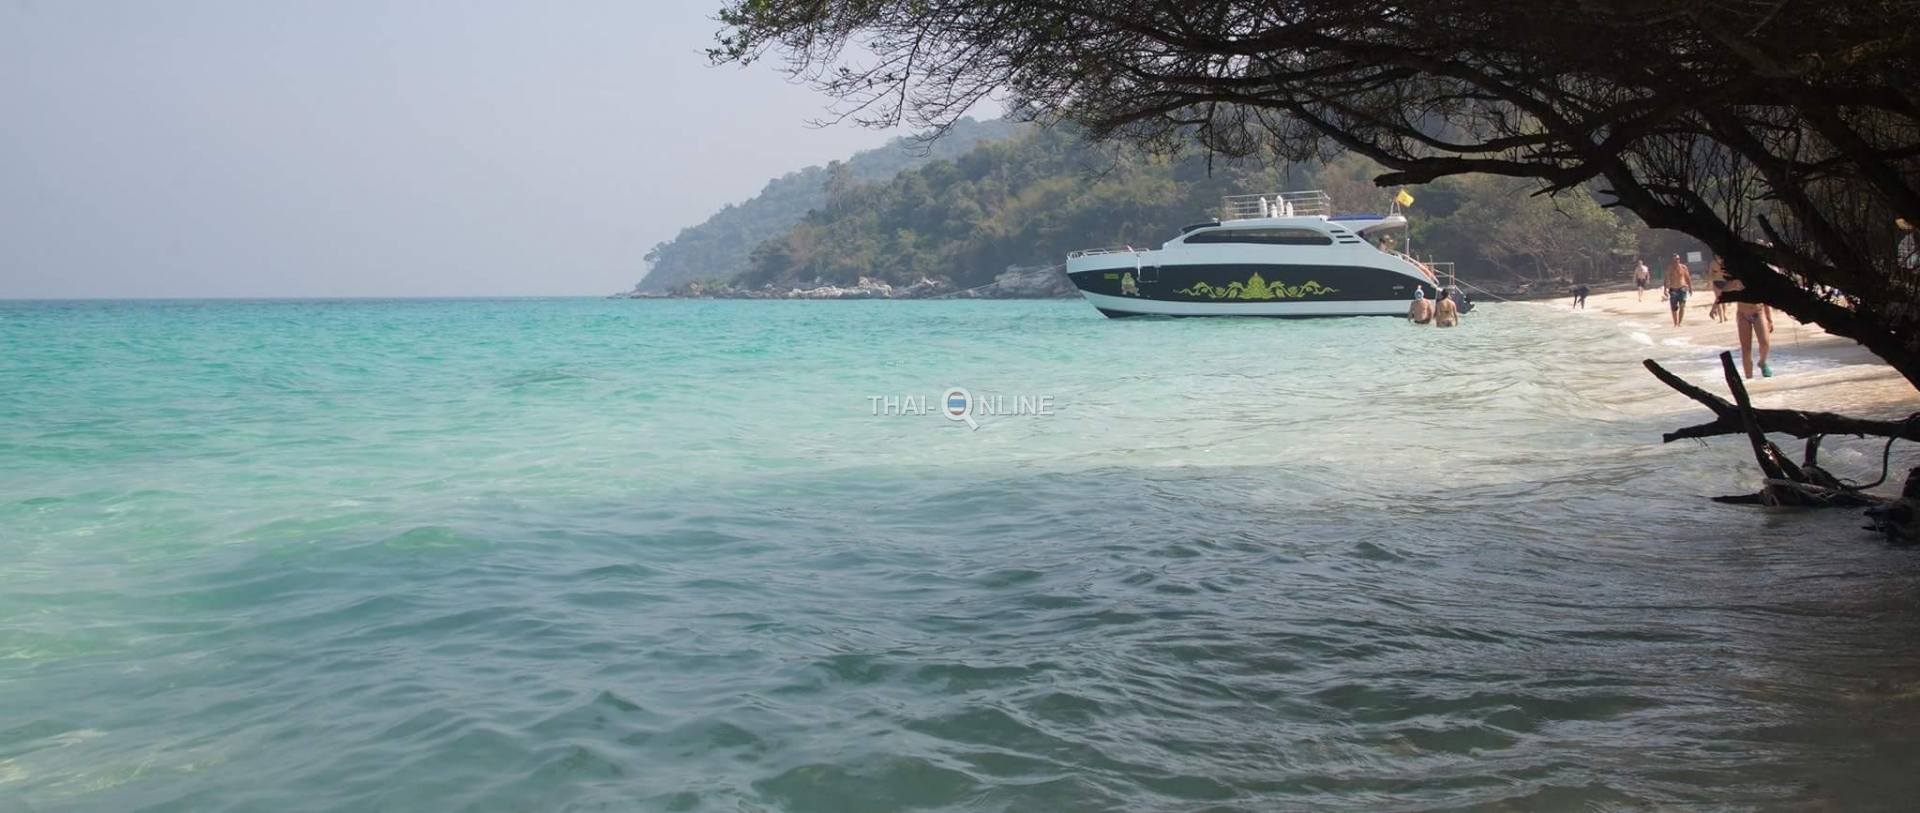 Остров Драконов на катамаране Рамаяна морская экскурсия компании Seven Countries из Паттайи Таиланд фото 14